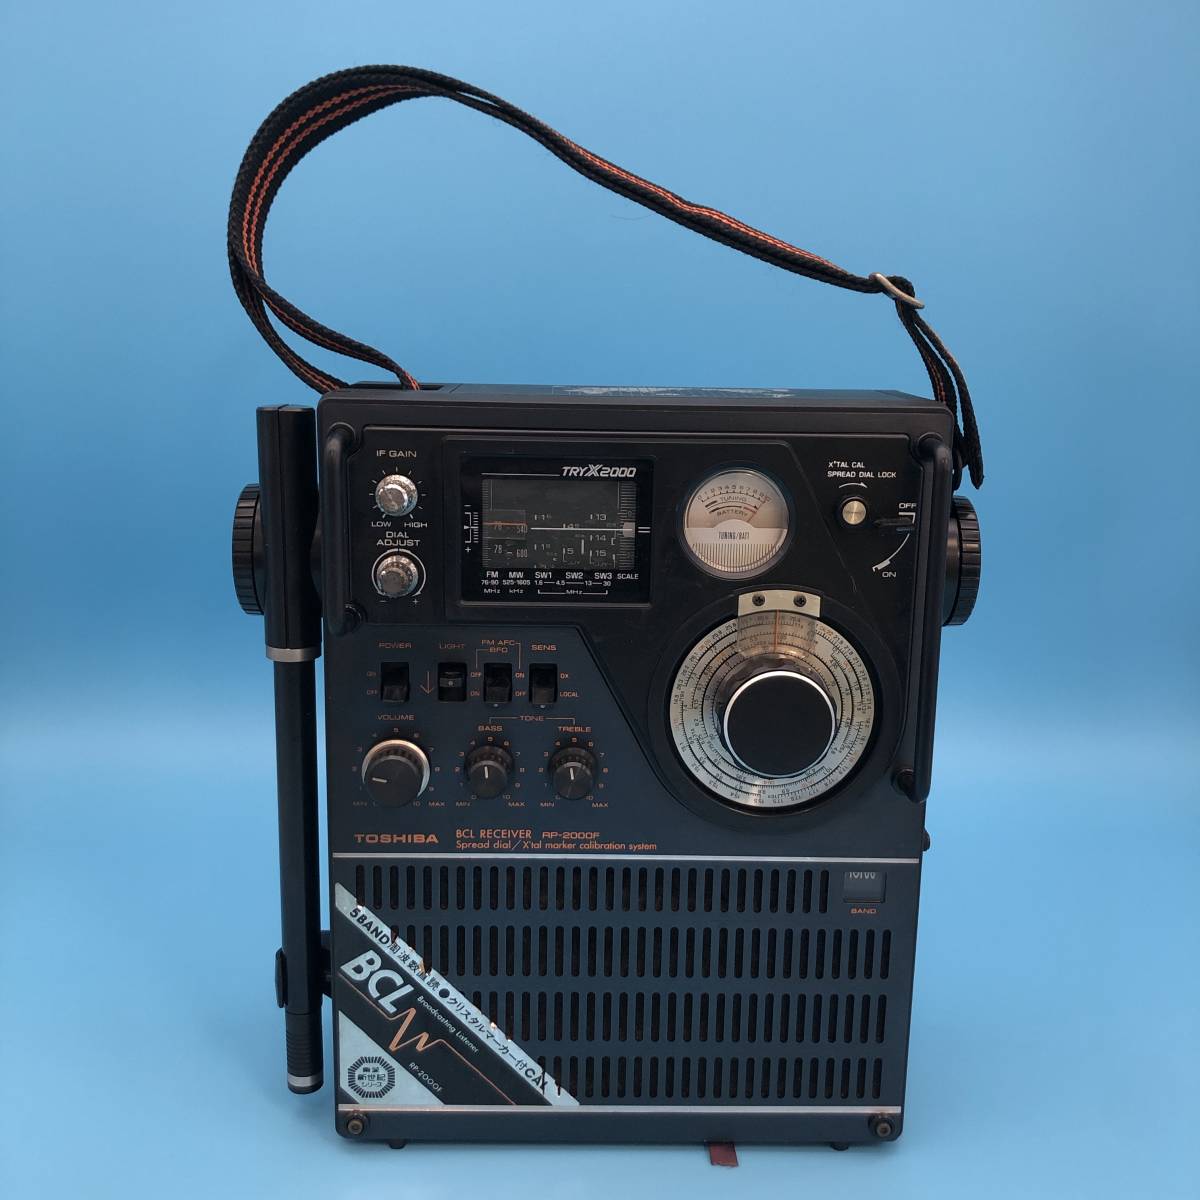 東芝 RP-2000F TRY-X2000 BCLラジオ RECEIVER レシーバー 5BAND 良品 ジャンク TOSHIBA 昭和レトロ